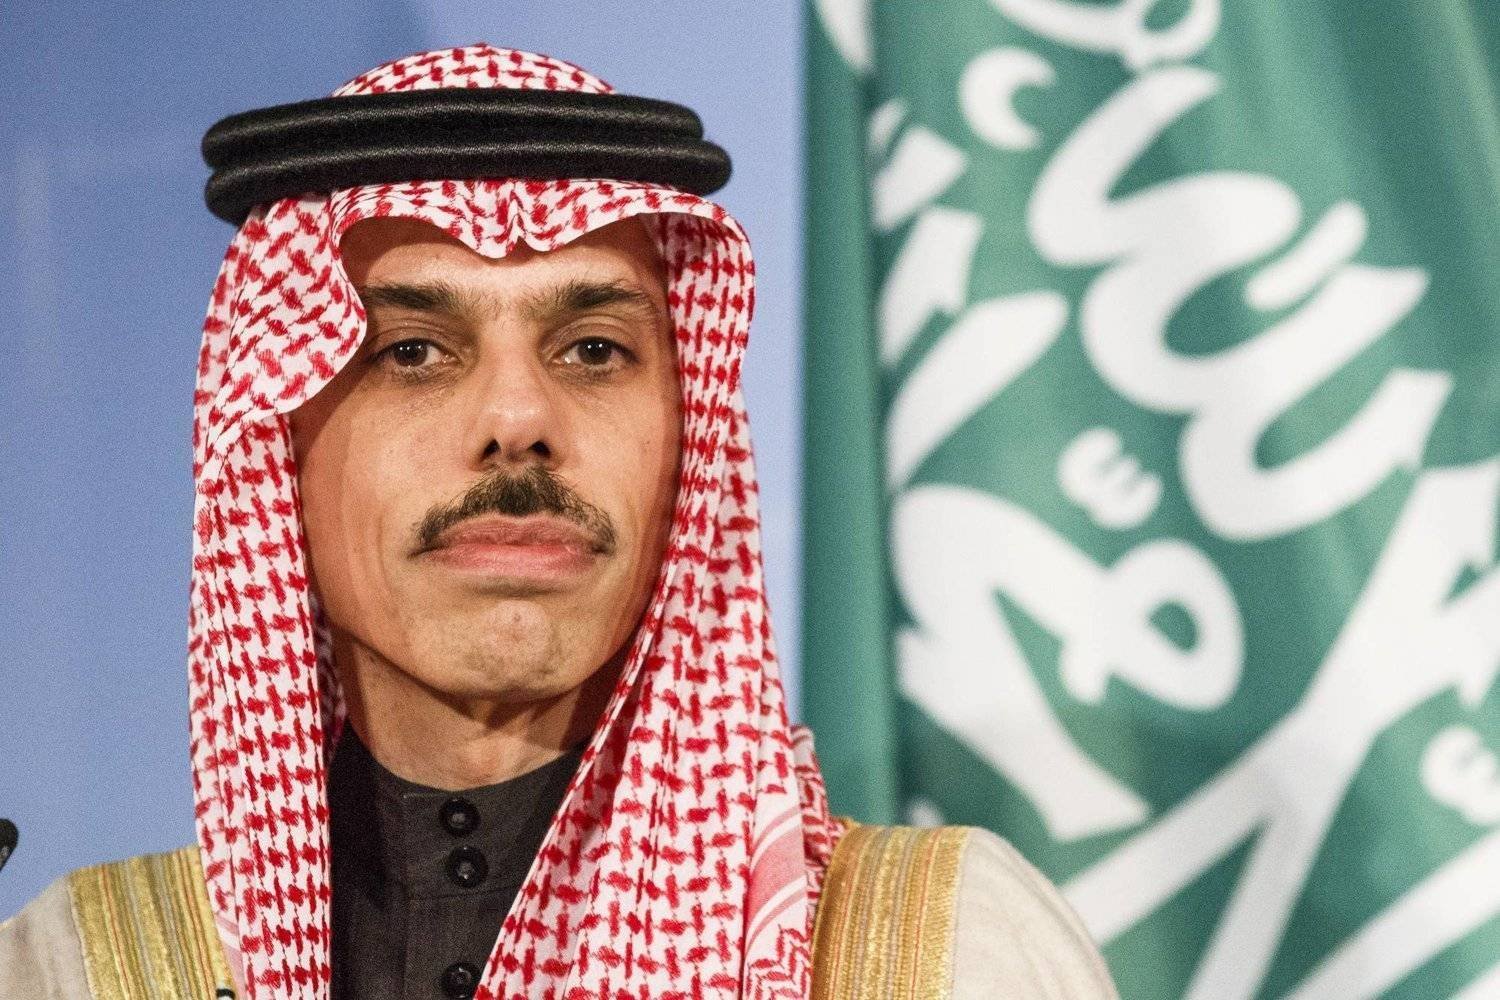 Saudi Foreign Minister Prince Faisal bin Farhan. Asharq Al-Awsat
